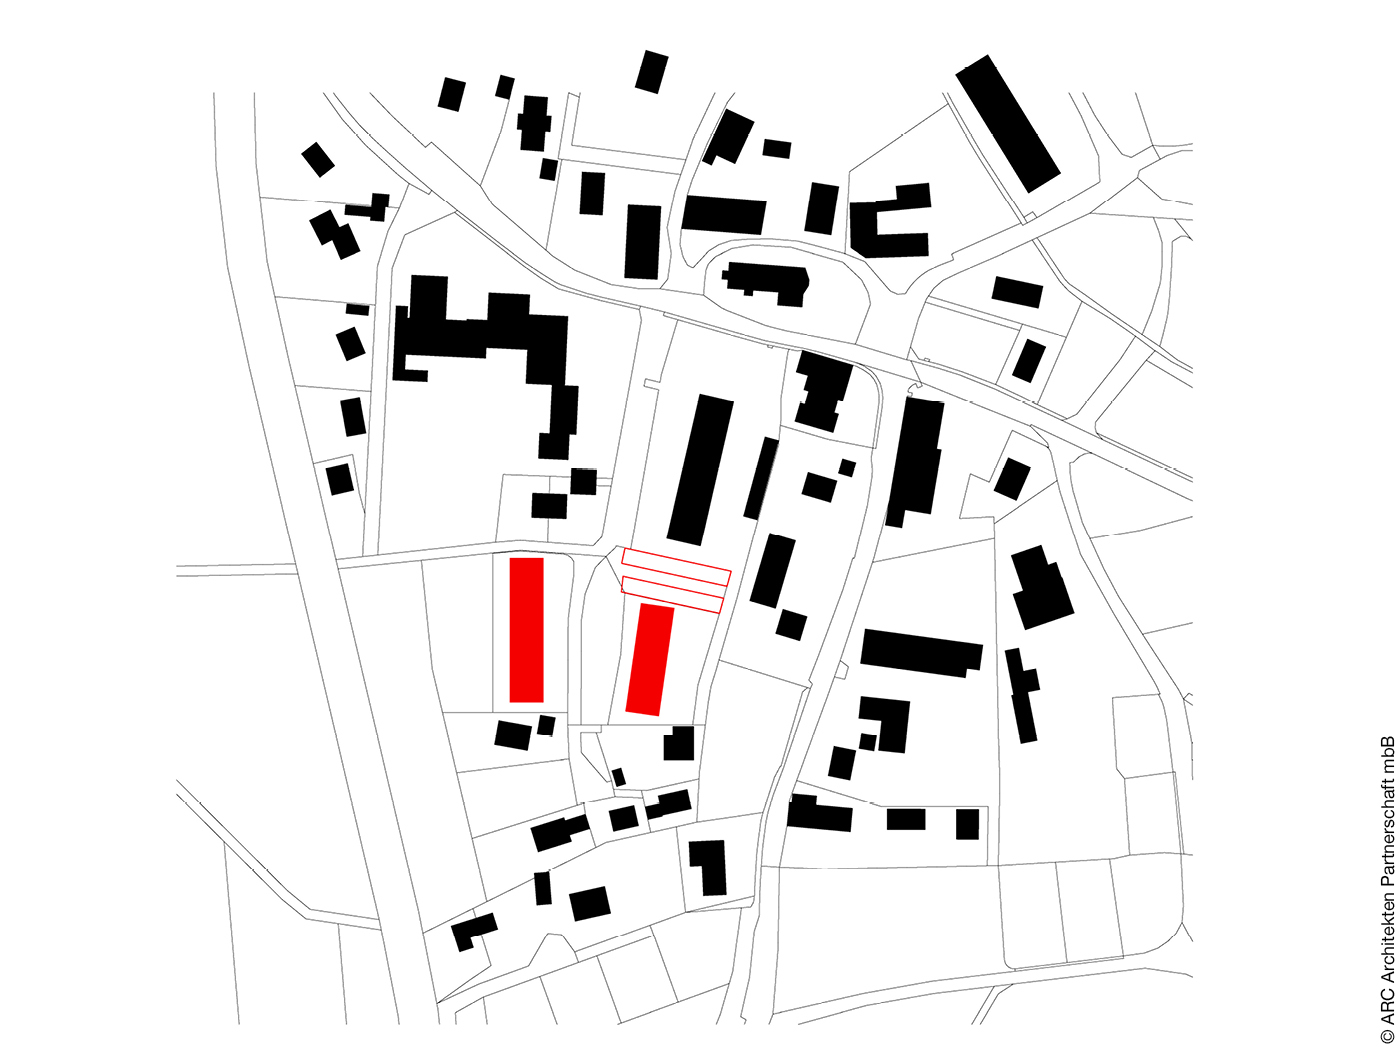 Schwarzplan von Münsing mit den Standorten der Häuser